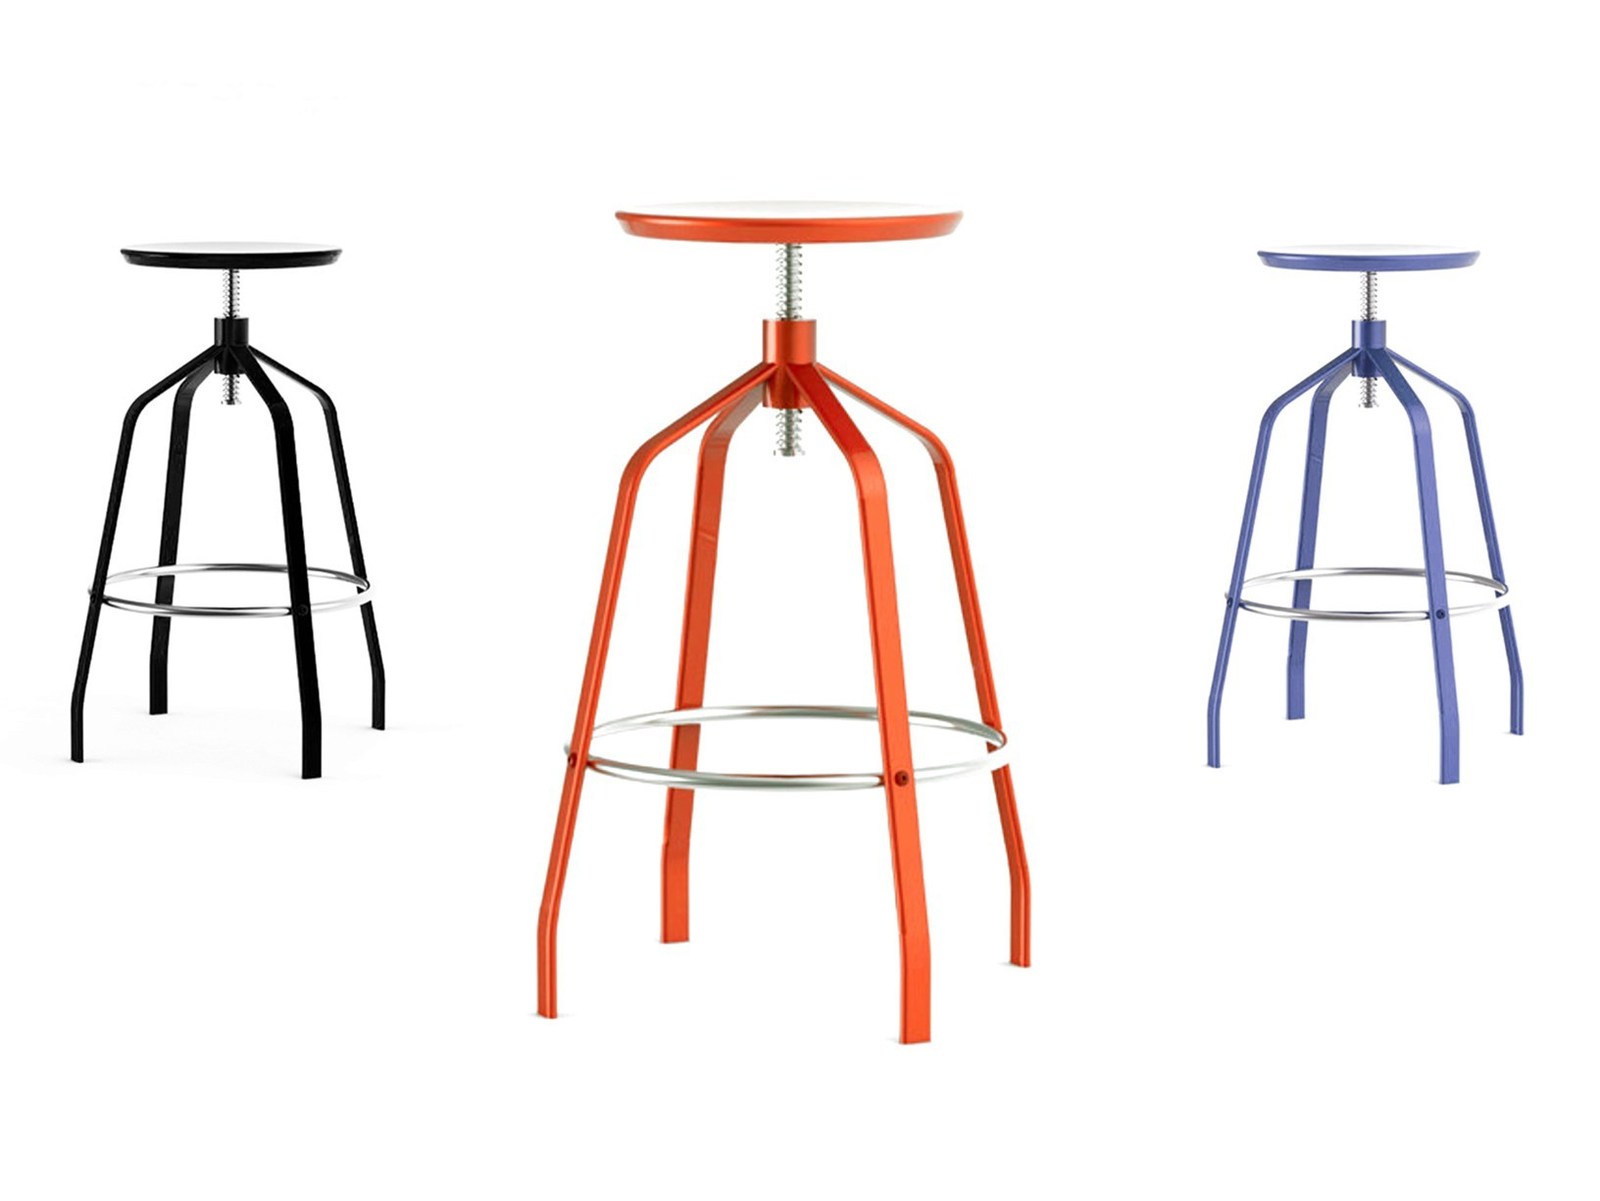 elegant-minimalist-adjustable-height-bar-stool-1-thumb-1600xauto-53672